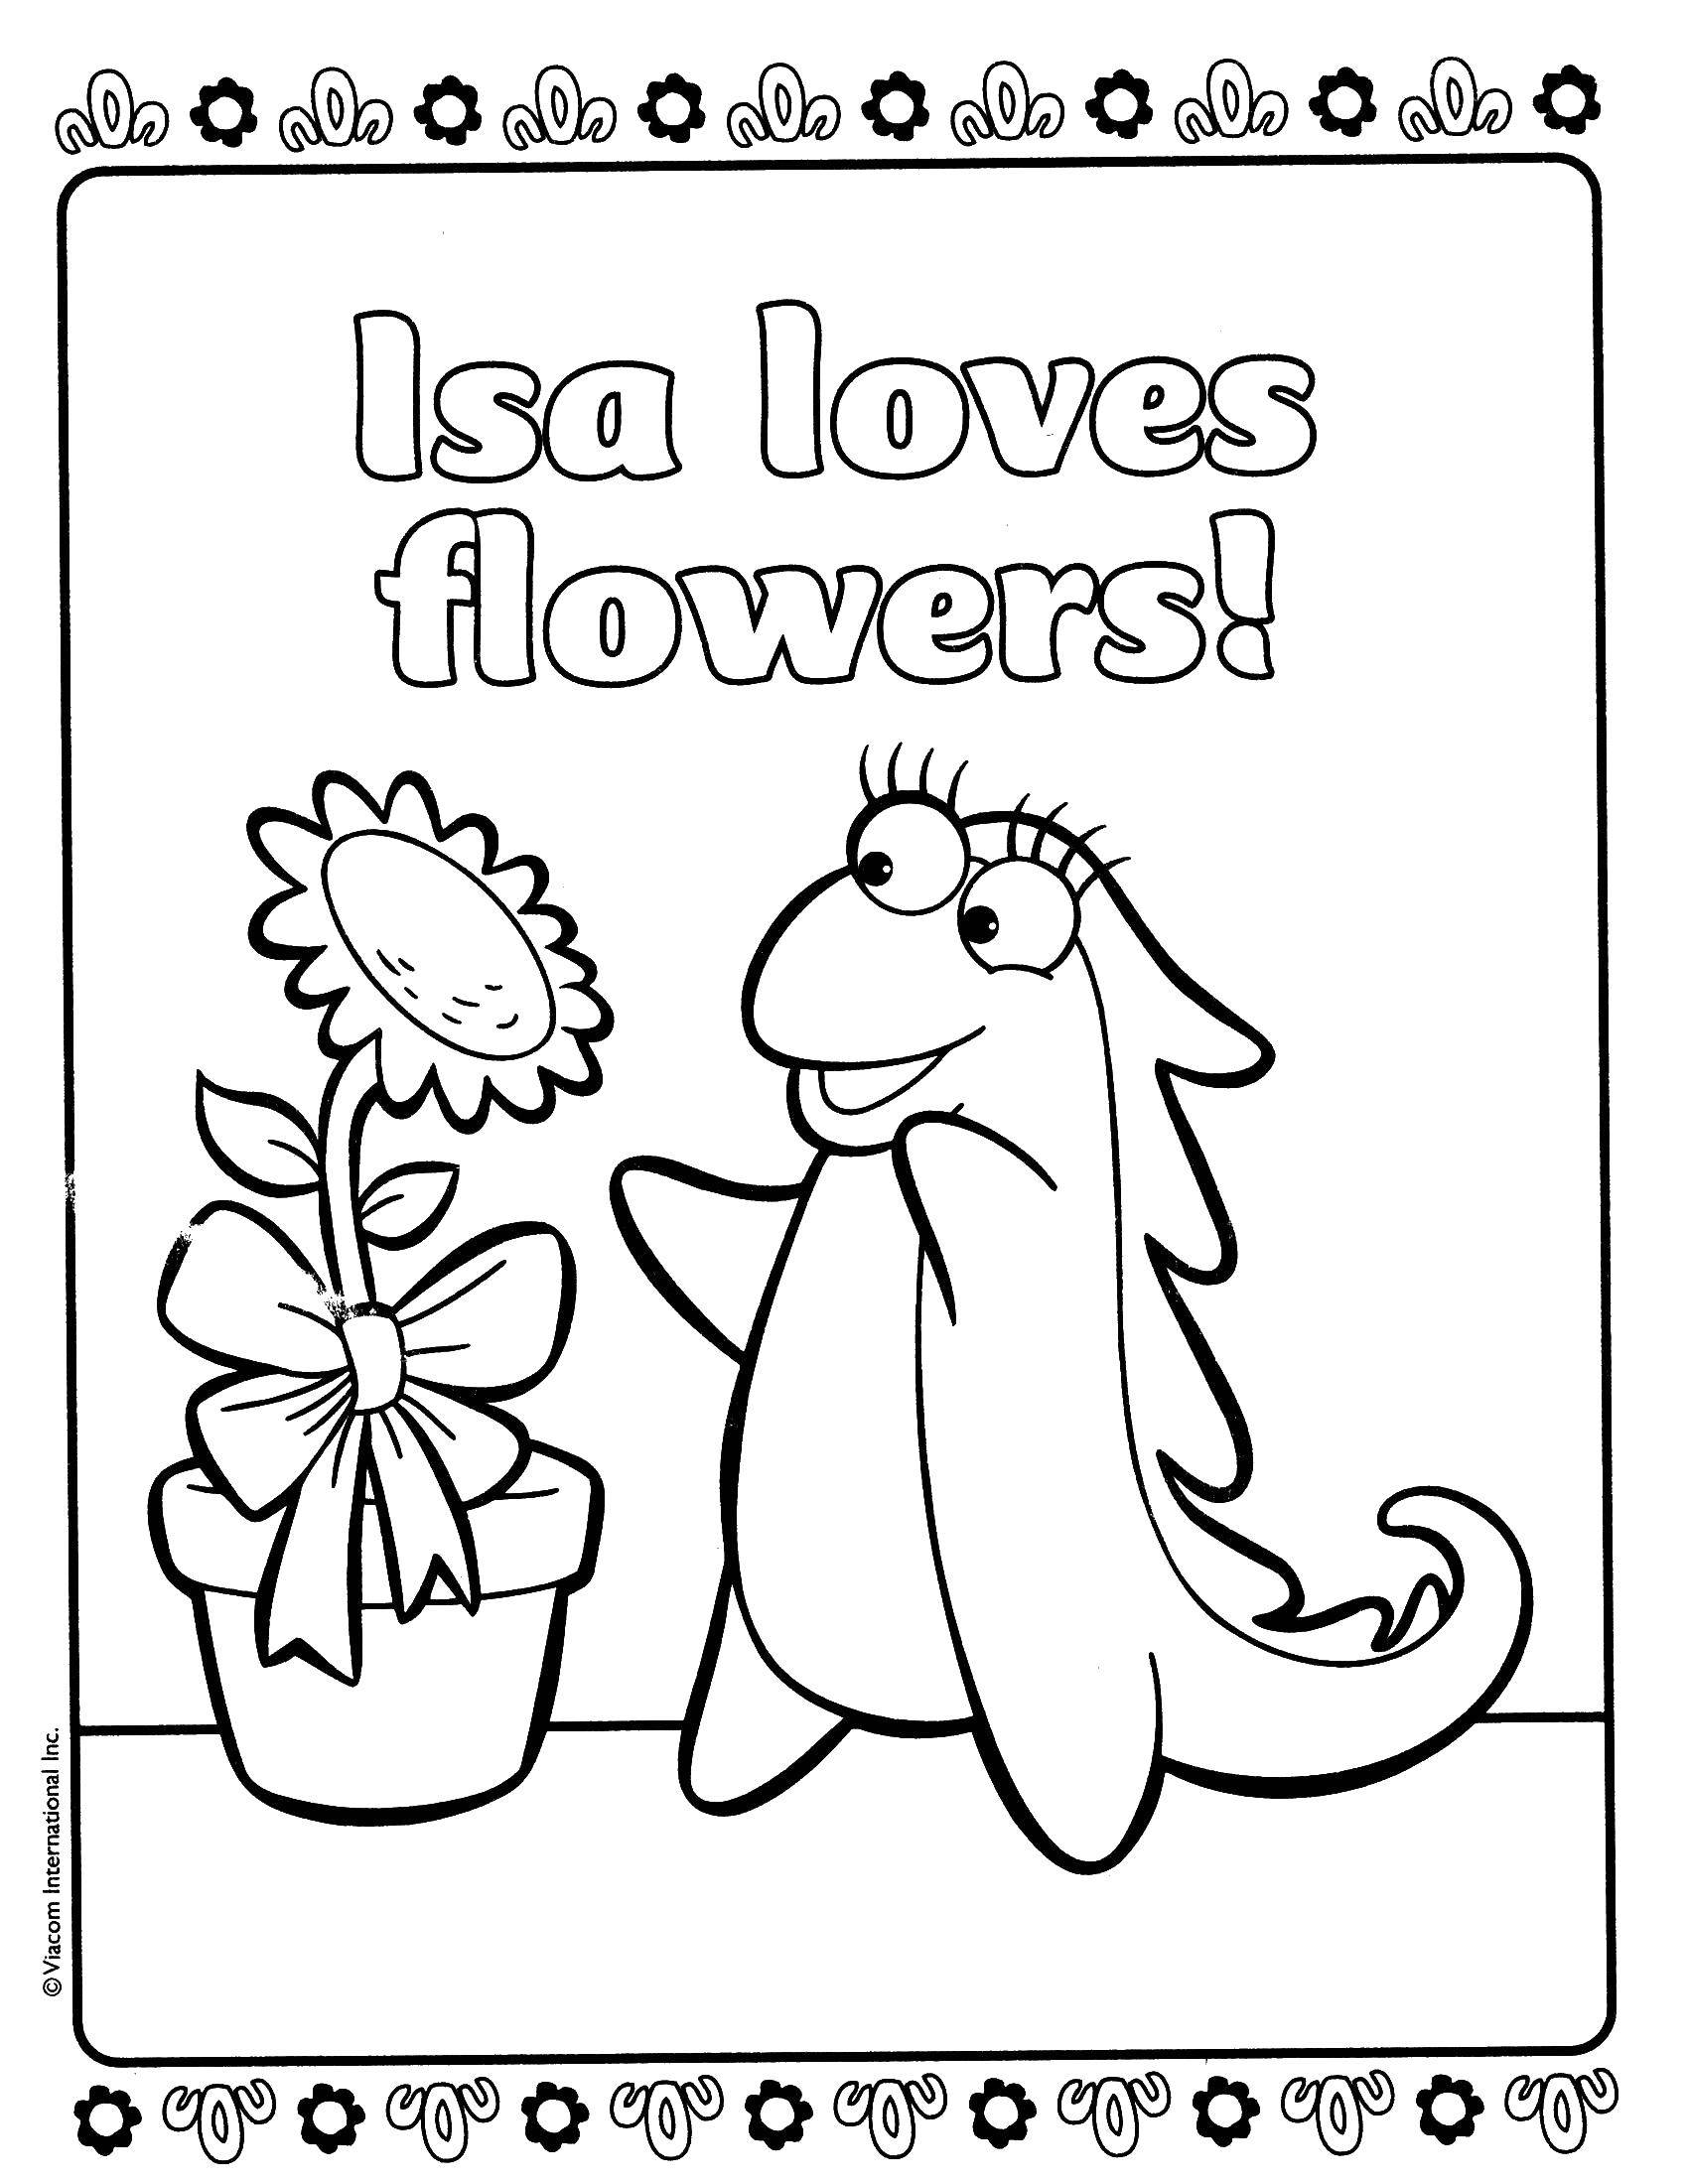 Опис: розмальовки  Іса любить квіти!. Категорія: даша мандрівниця. Теги:  Персонаж з мультфільму.